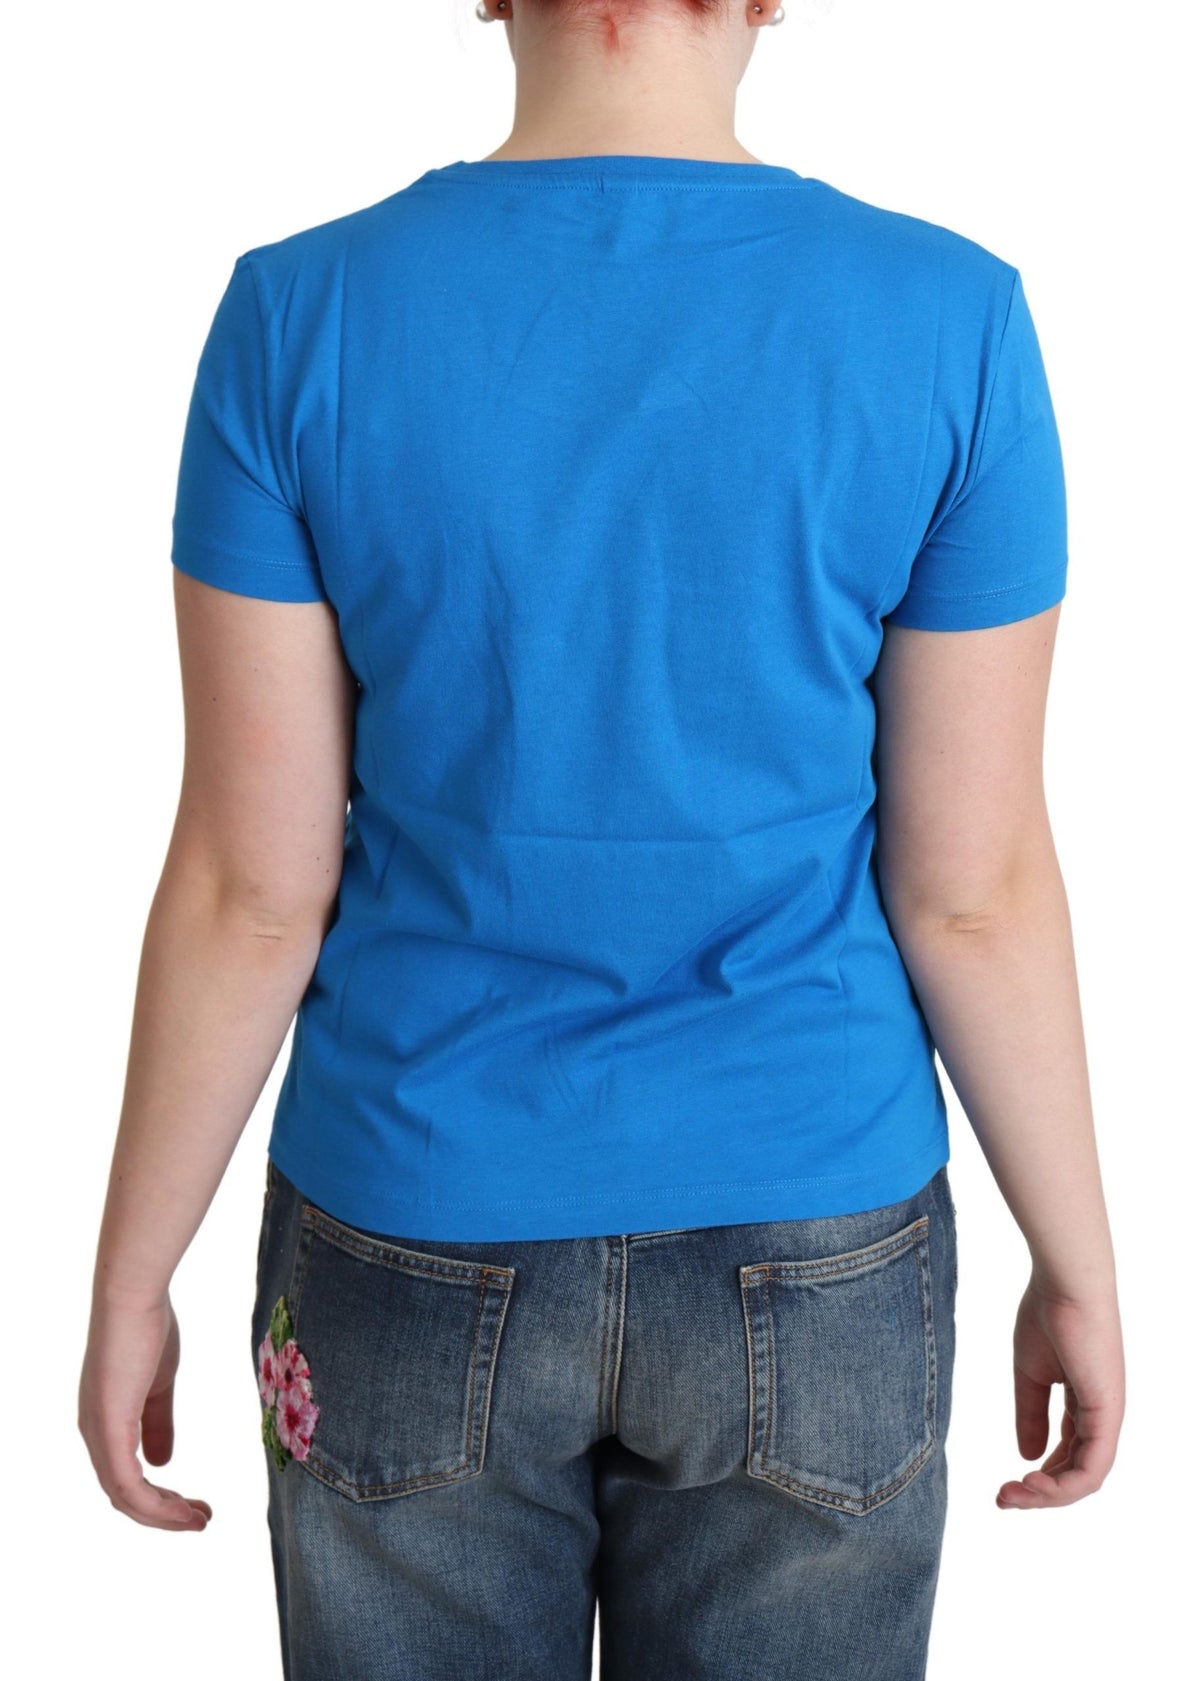 Schickes Moschino-Baumwoll-T-Shirt mit einzigartigem Print